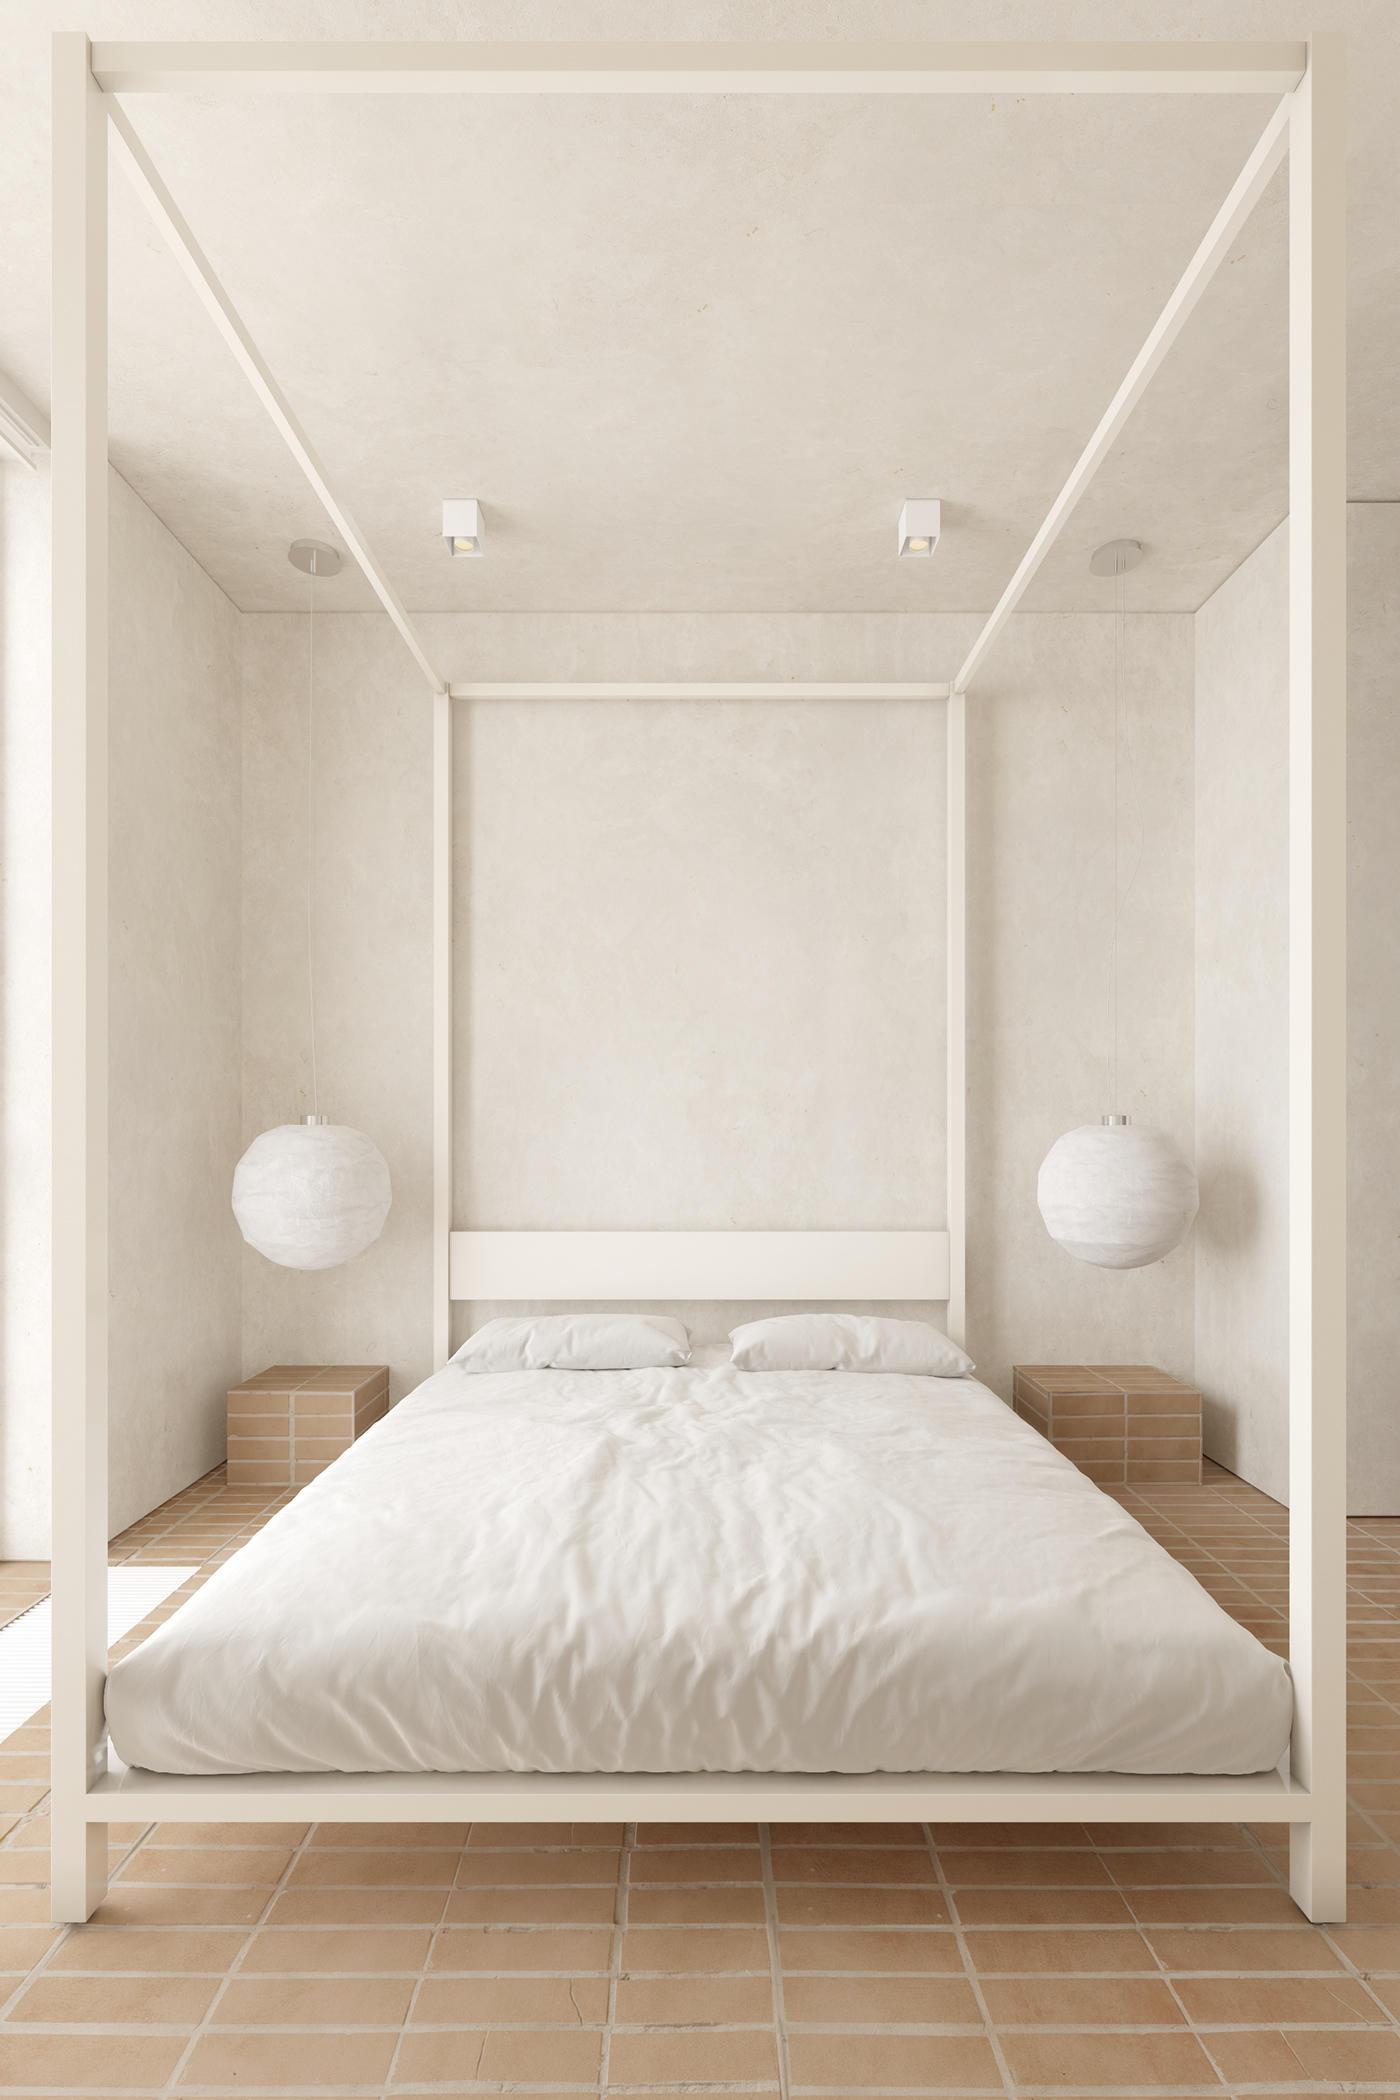 architecture archviz bedroom Interior interior design  kitchen modern visualization